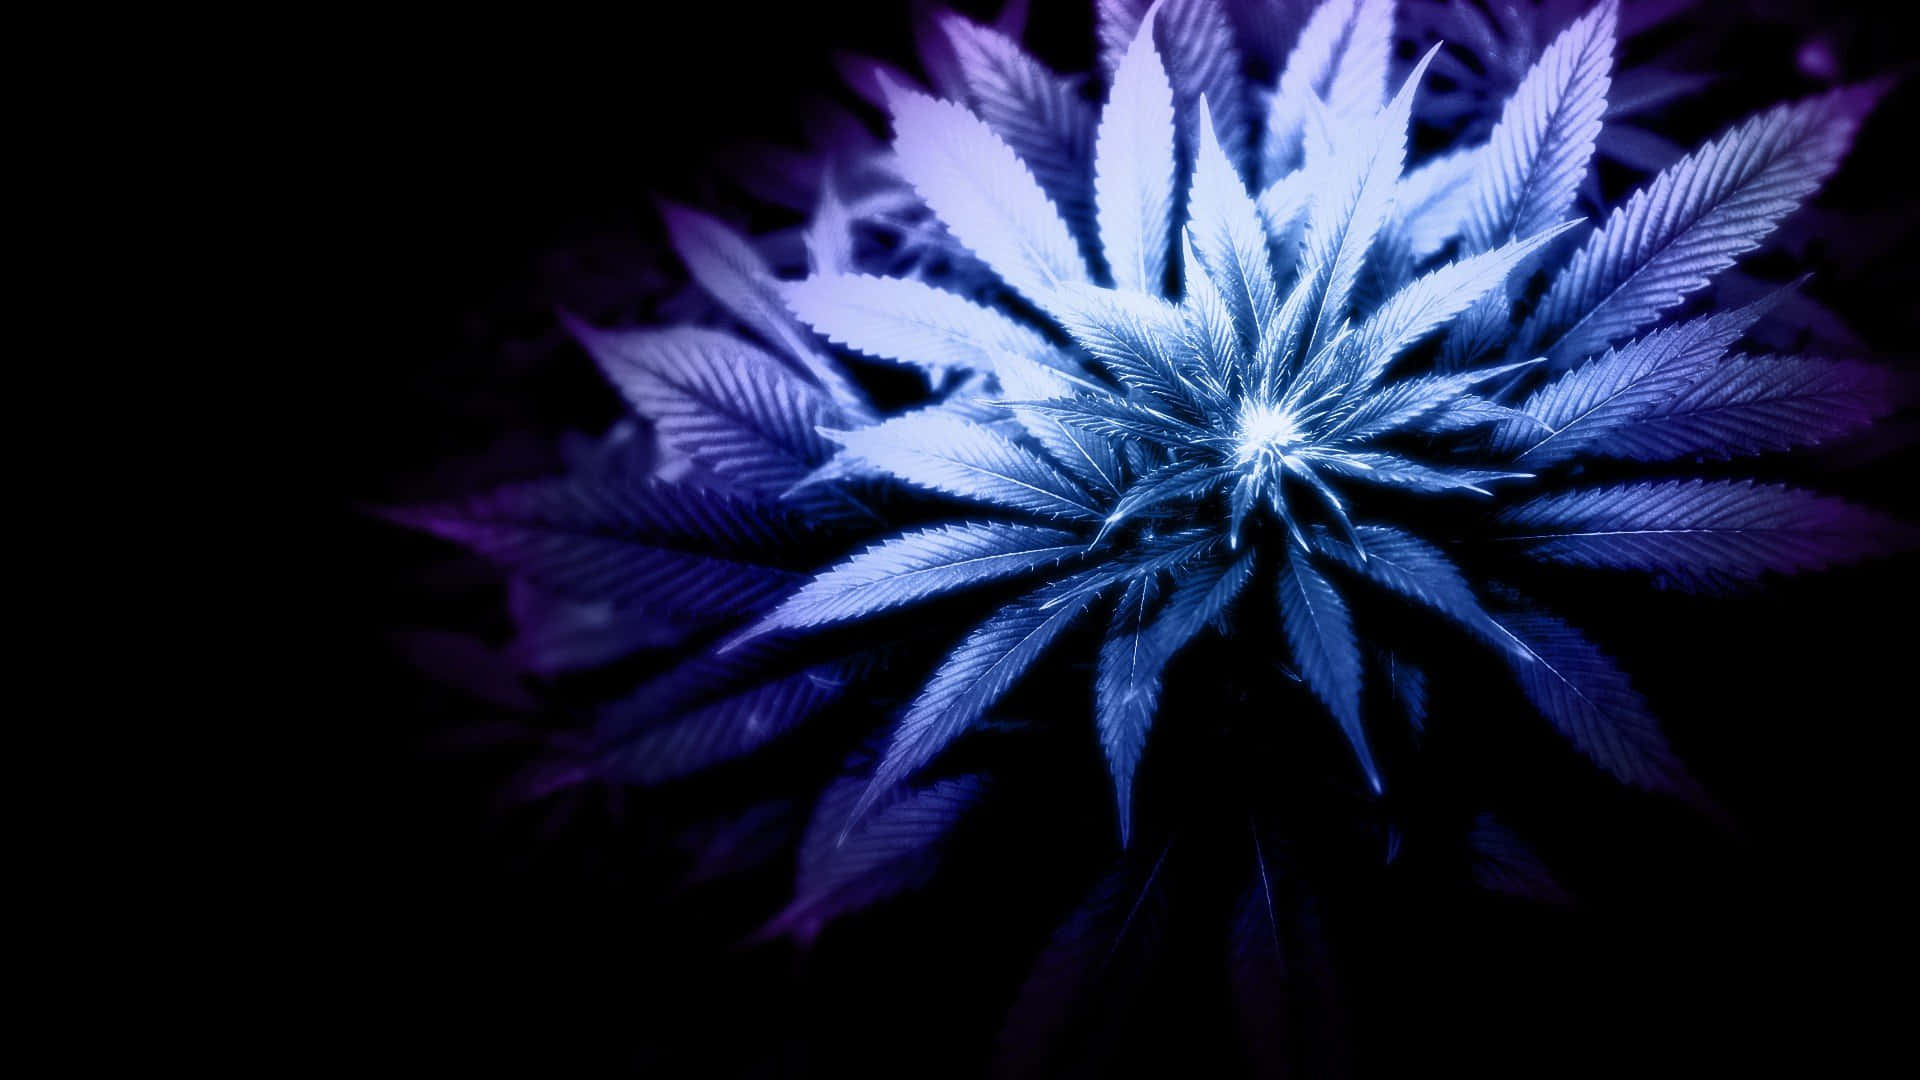 Unarelajante Obra De Arte Digital Temática 420 Que Representa Hojas De Marihuana En Un Ambiente Surrealista Y Tranquilo Rodeado De Vibrantes Colores Neón.